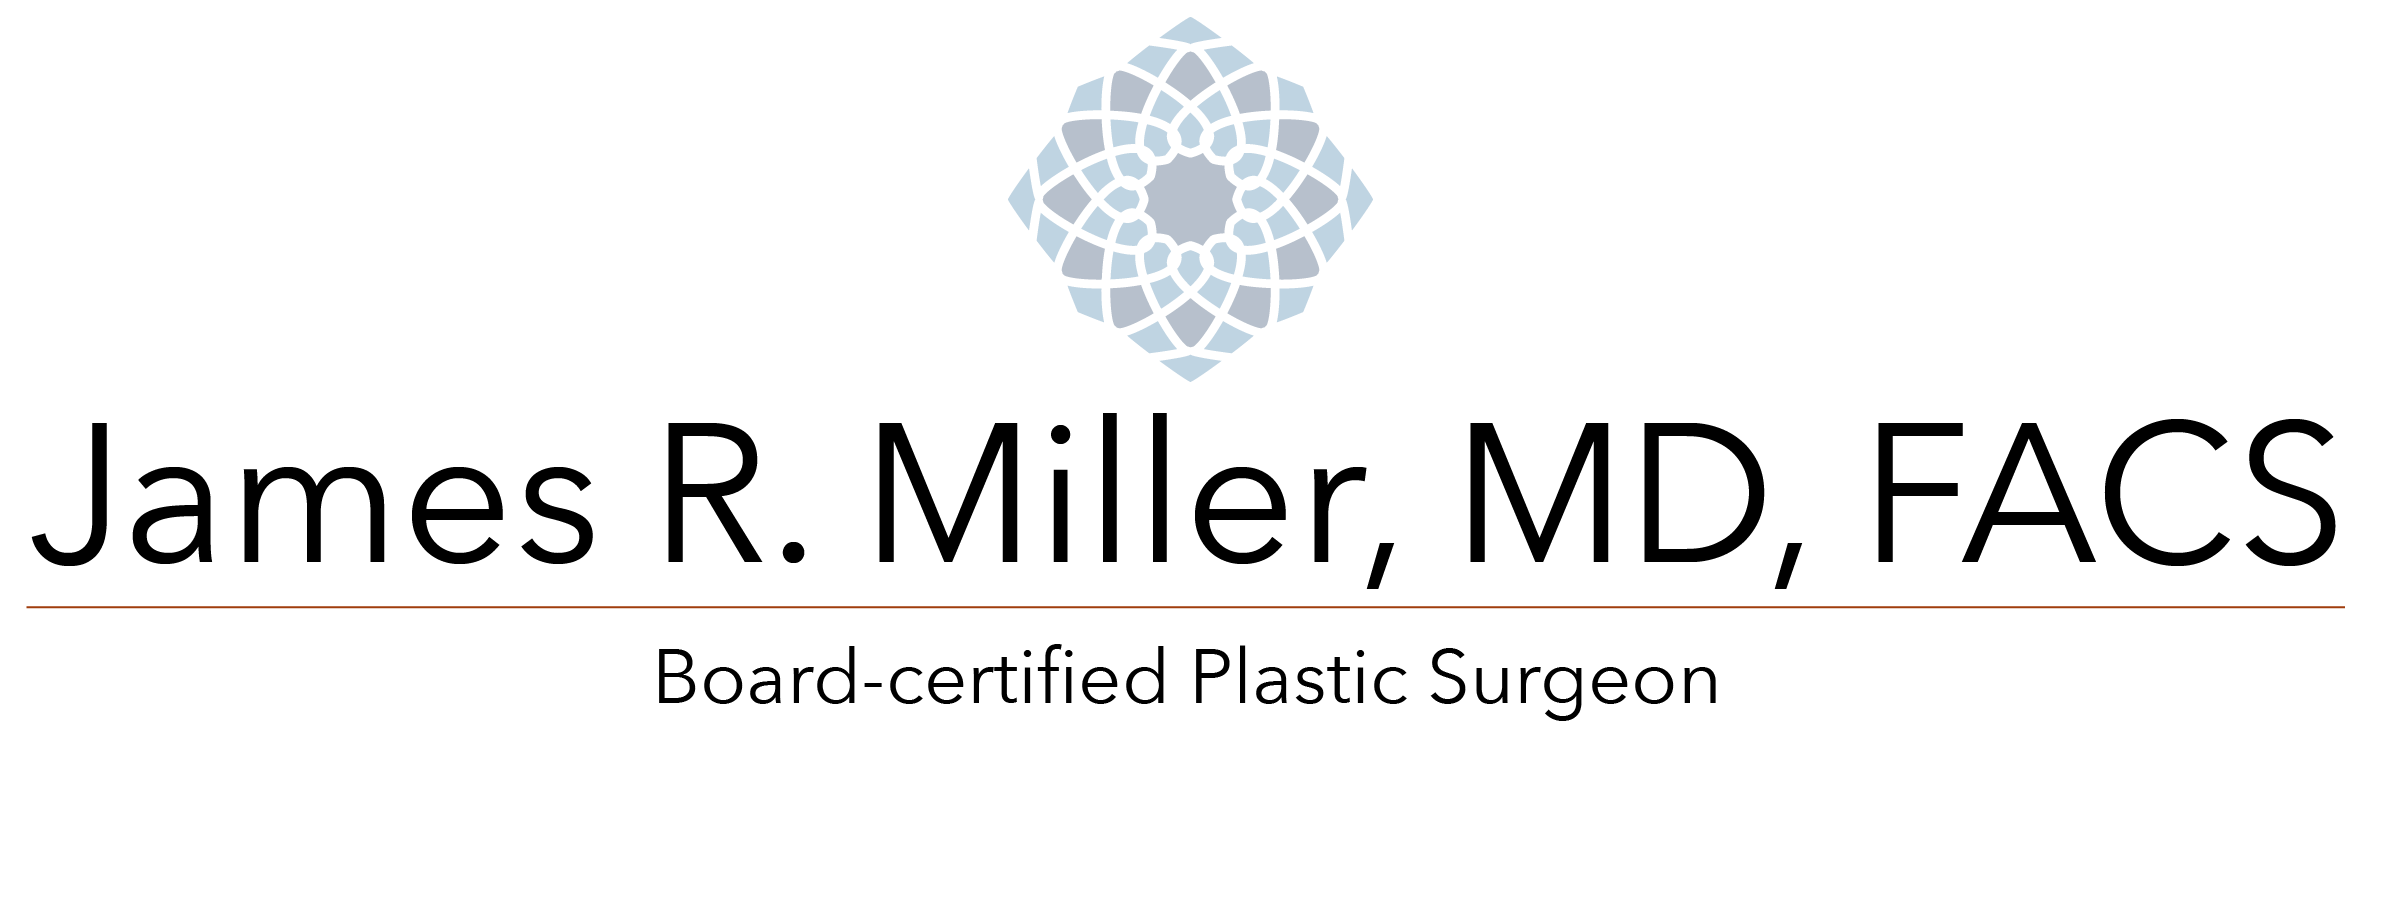 Dr. James R. Miller